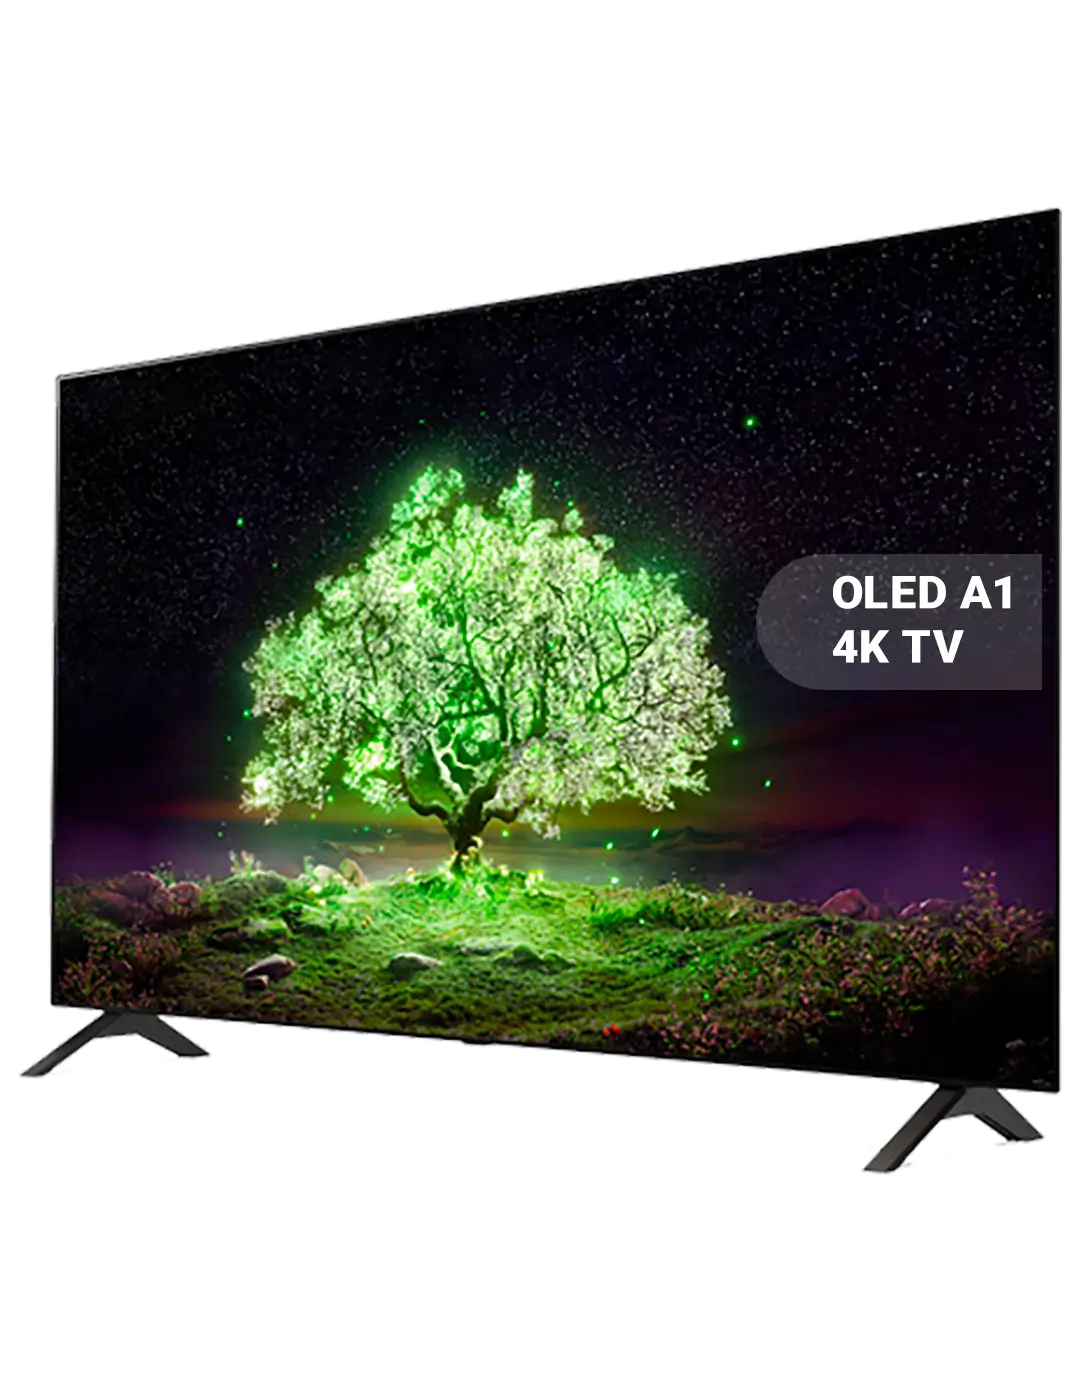 LG OLED A1 4K TV